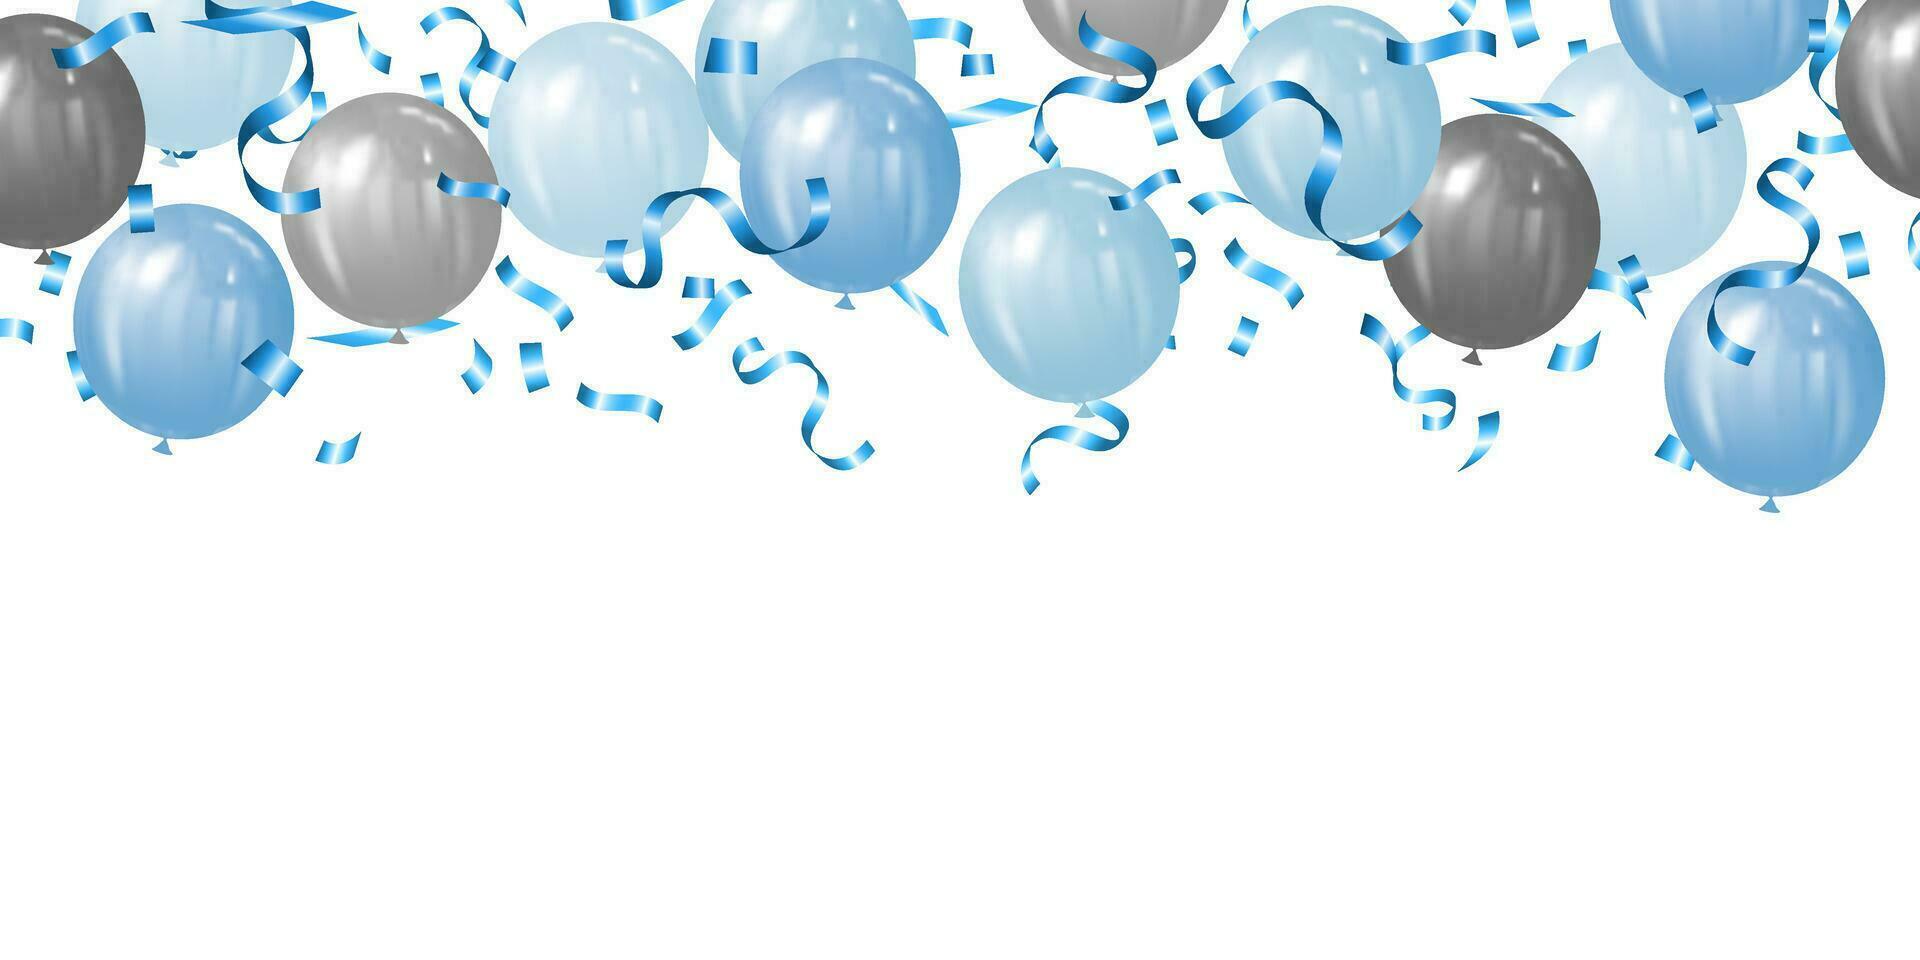 bakgrund vektor illustration av blå och silver- ballonger och blå konfetti för fäder dag